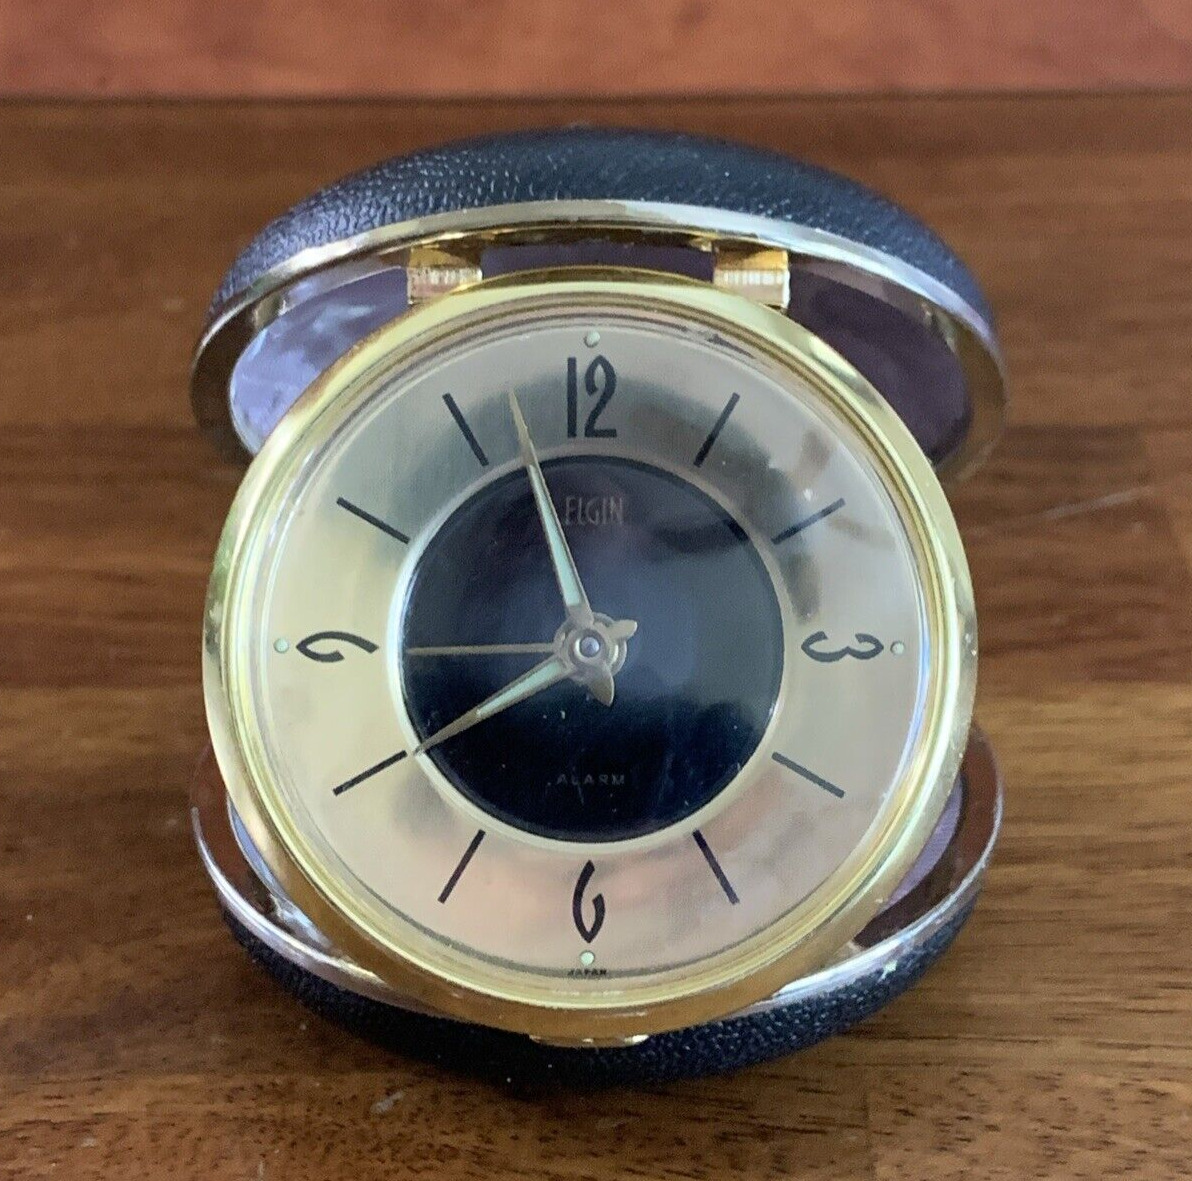 Elgin Travel Alarm Clock Made In Japan